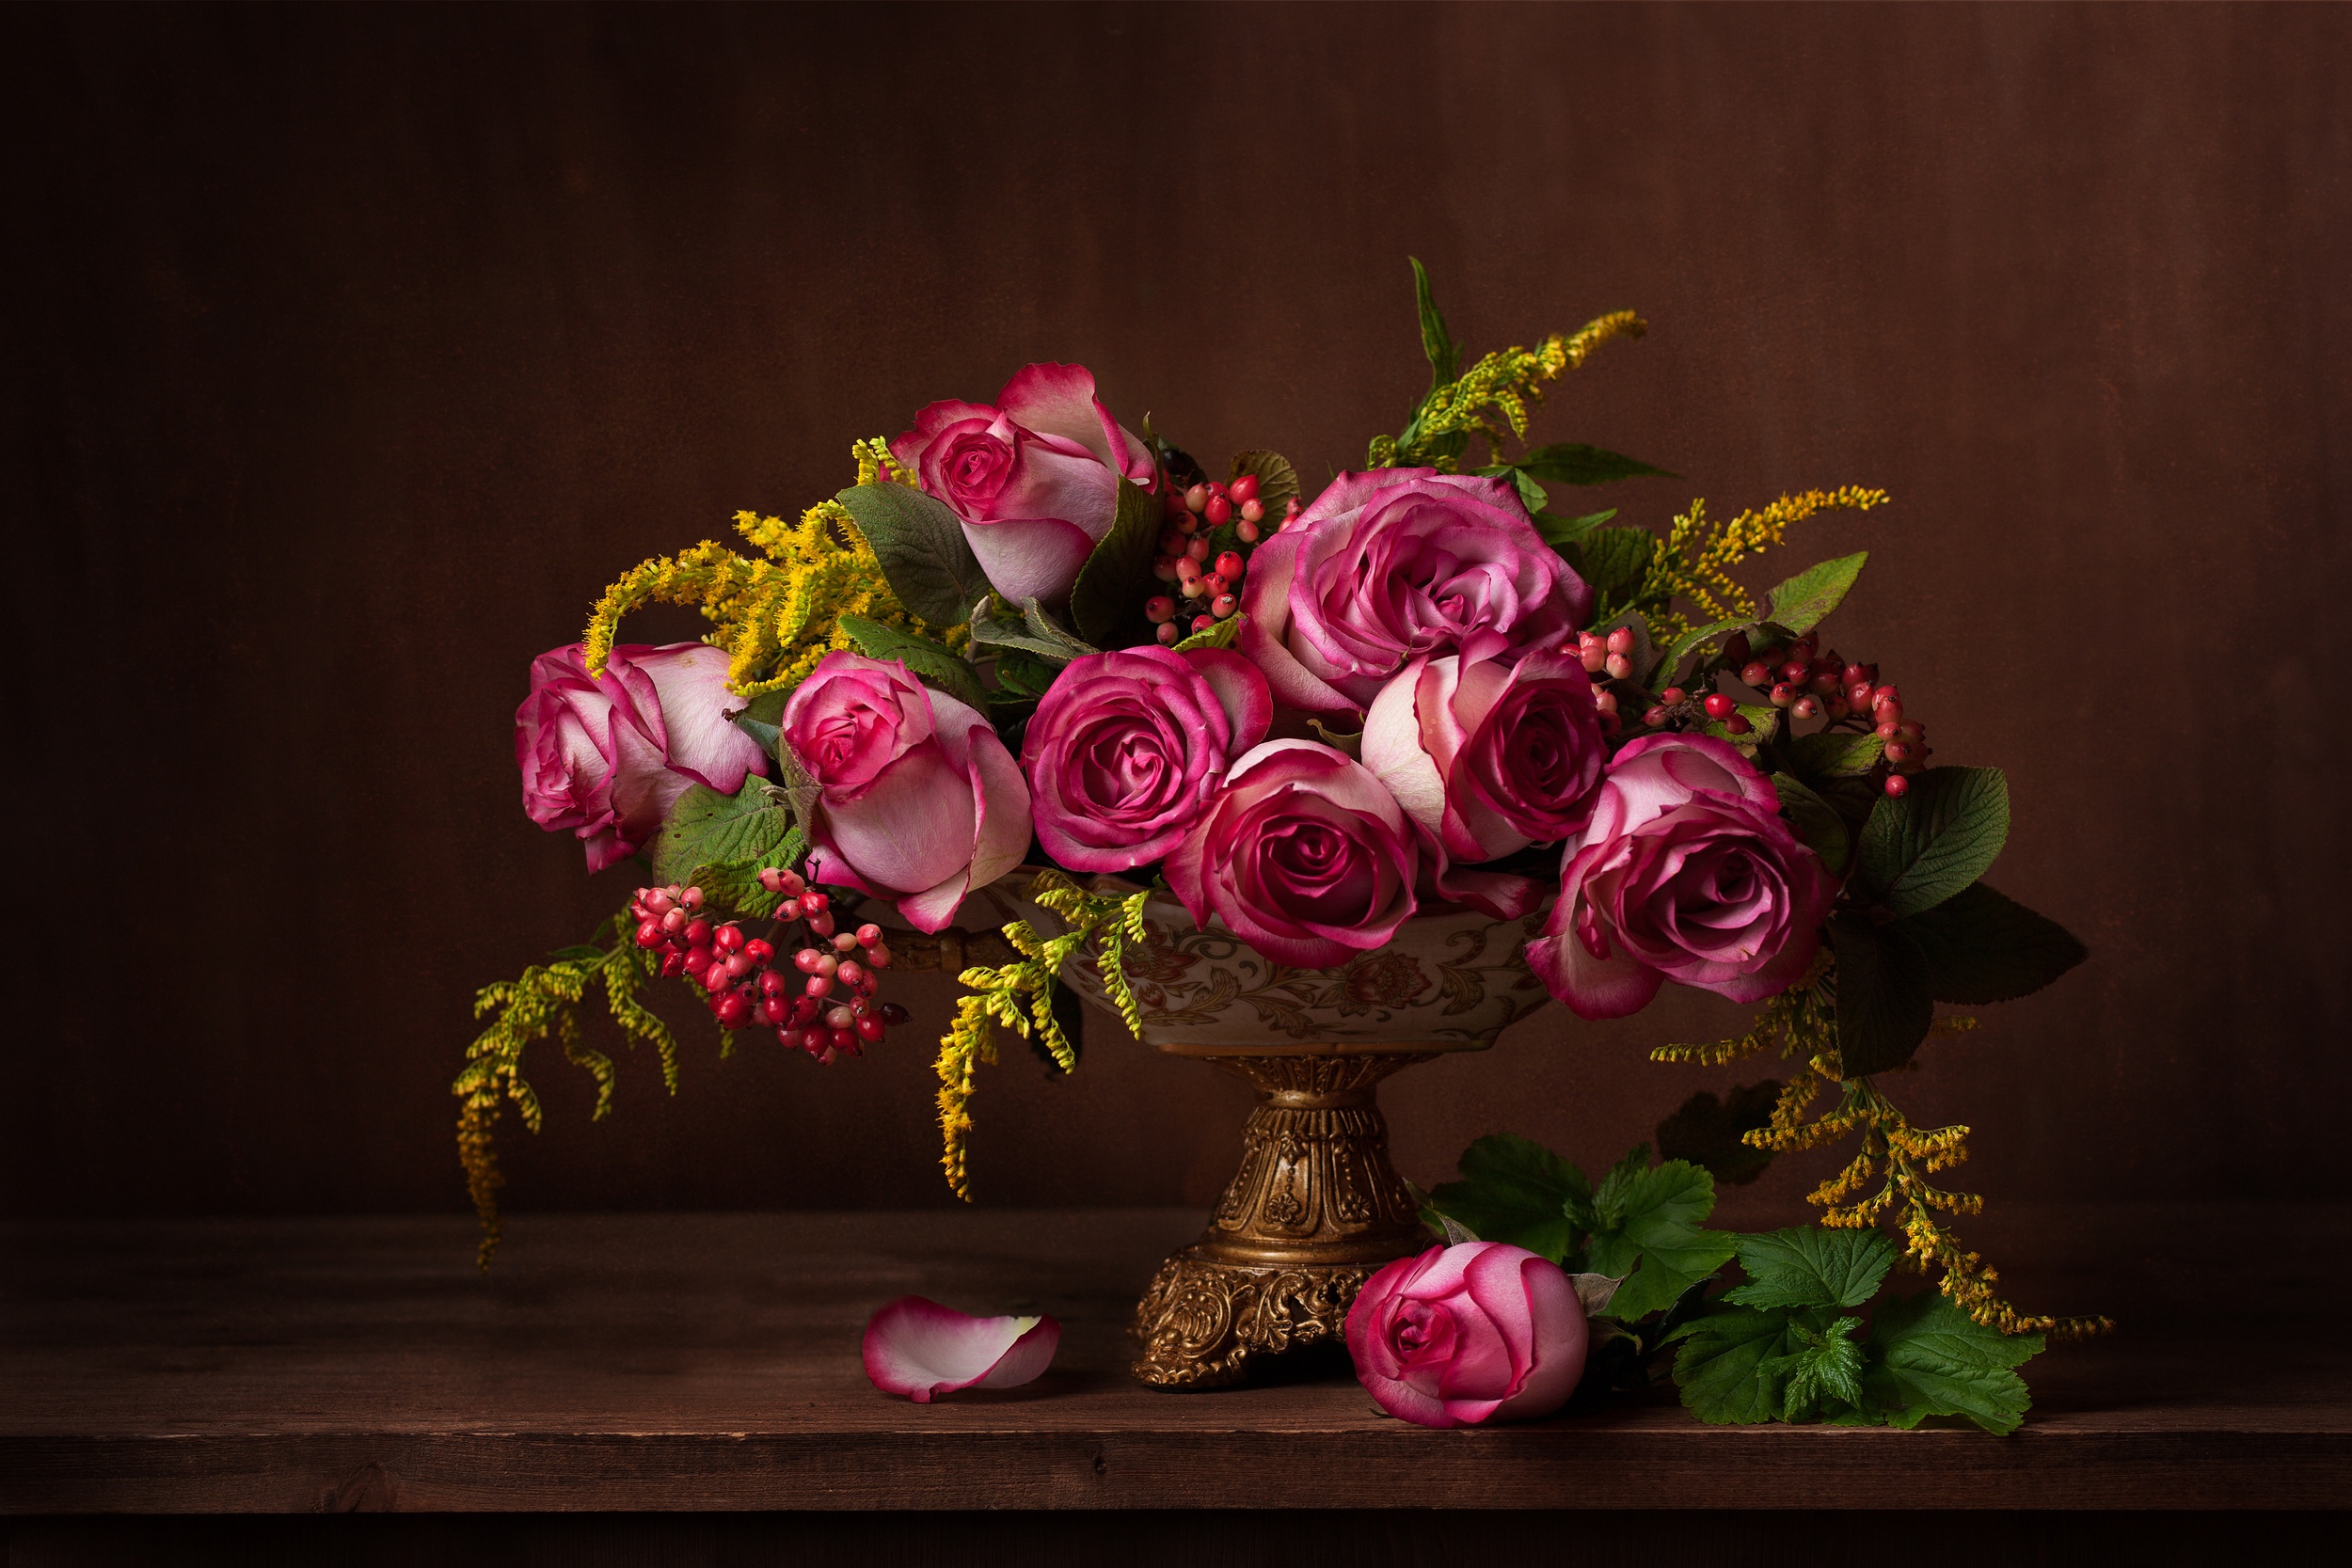 Картинка с цветами на столе. Натюрморт: цветы. Красивый букет цветов. Роскошные цветы. Красивый букет в вазе.